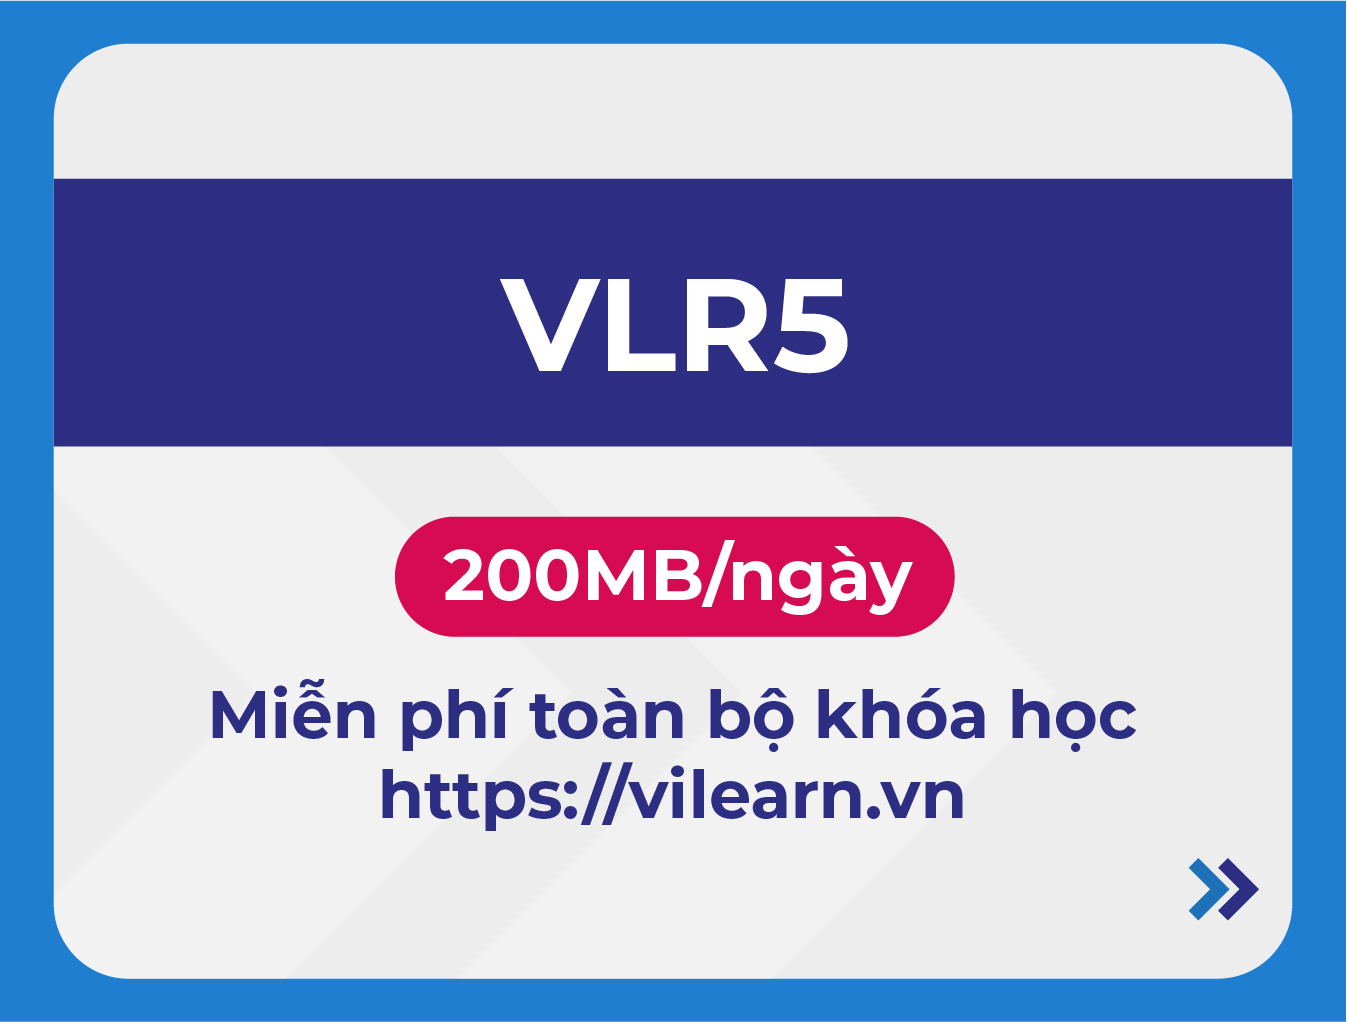 VLR5